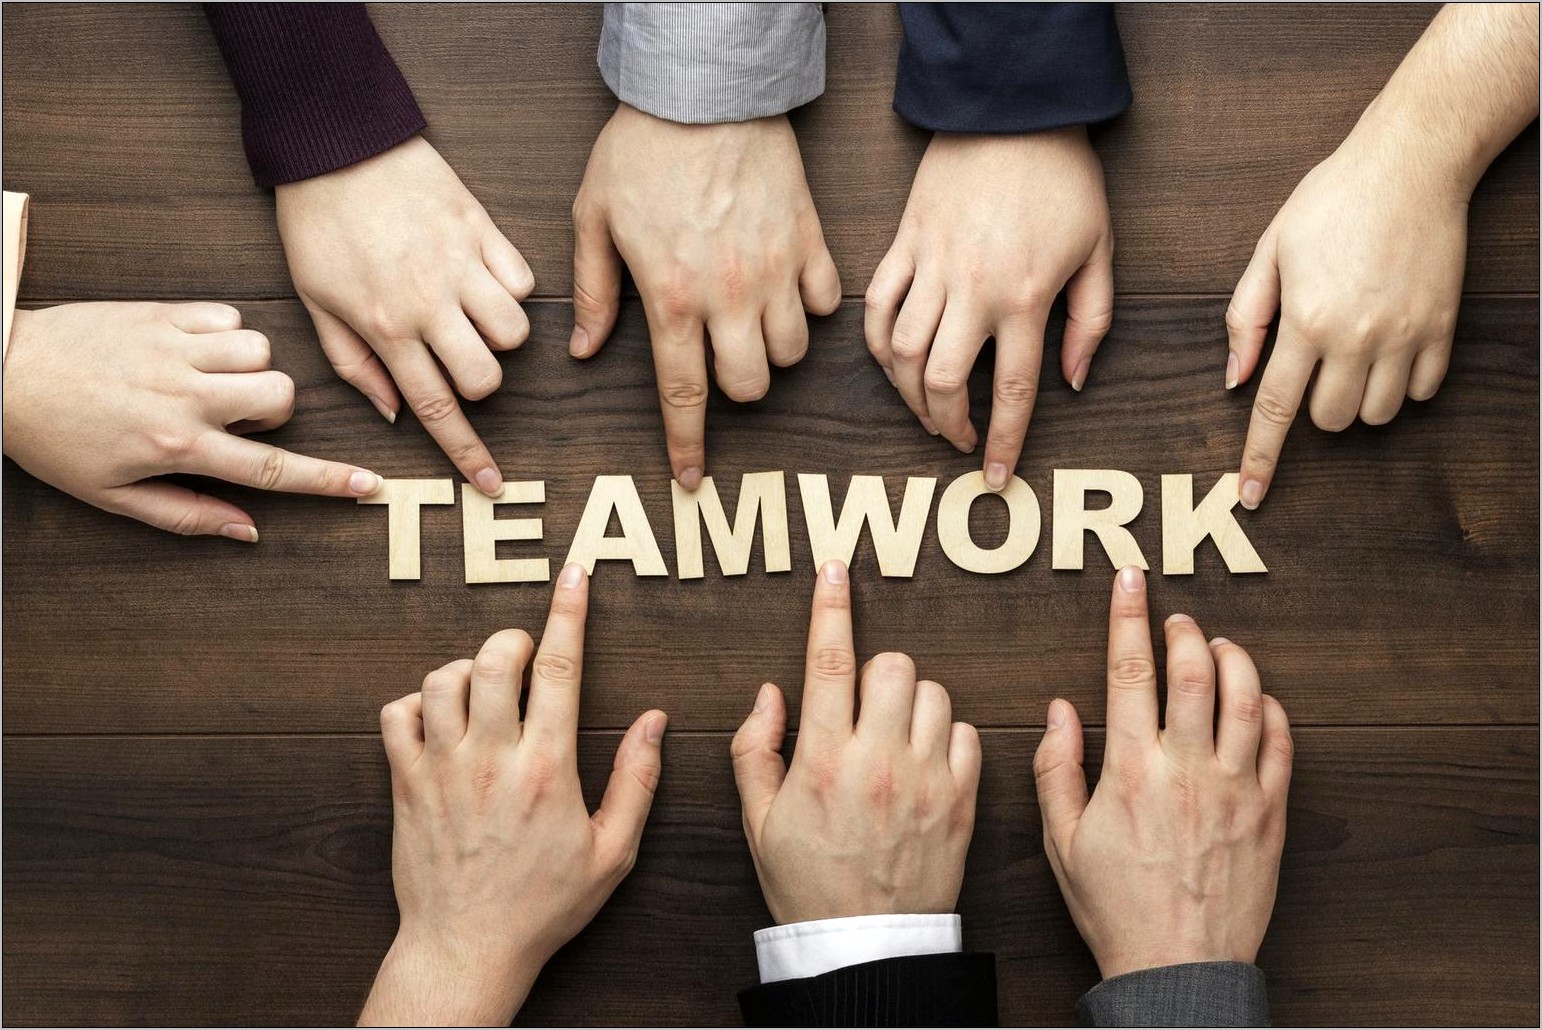 List Of Skills For Resume Teamwork